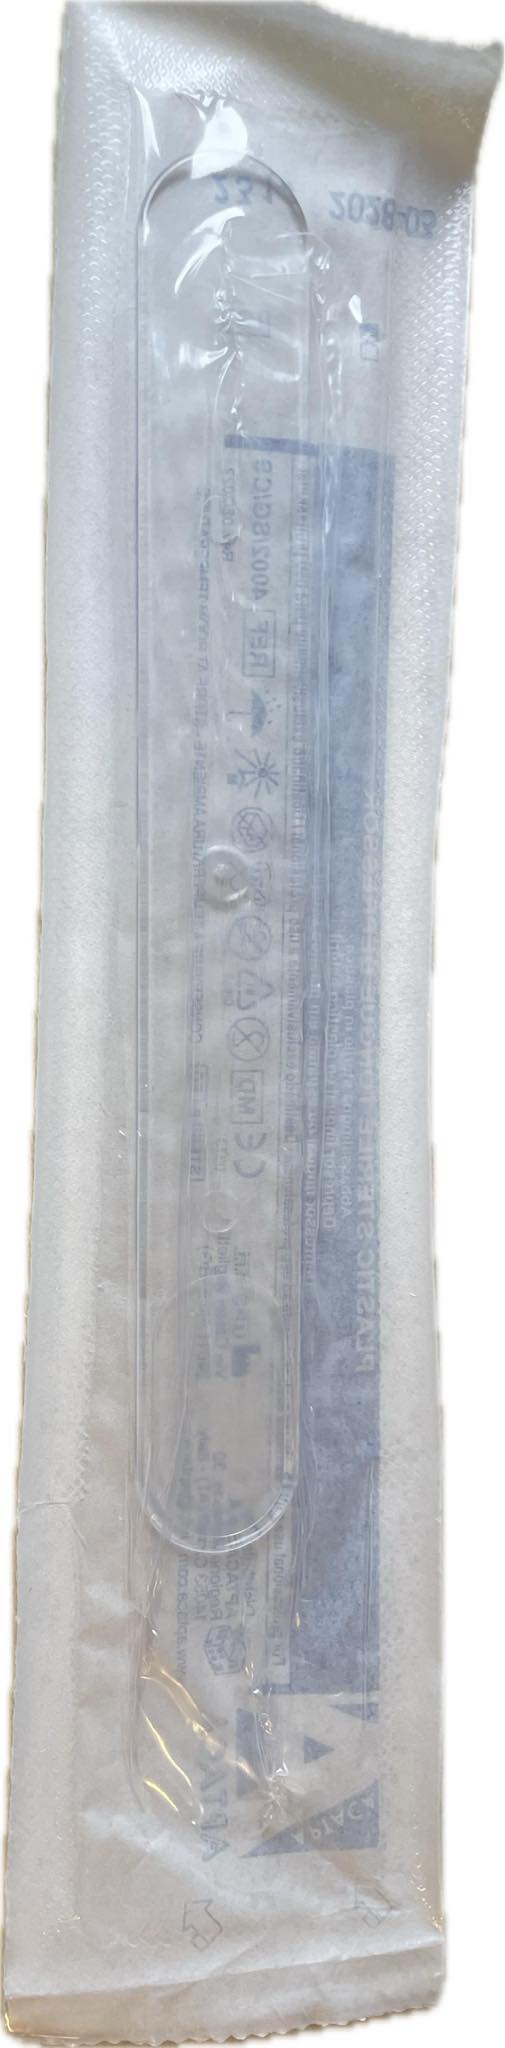 Szpatułka wyprofilowana laryngologiczna sterylna plastikowa, biała, 1 szt.